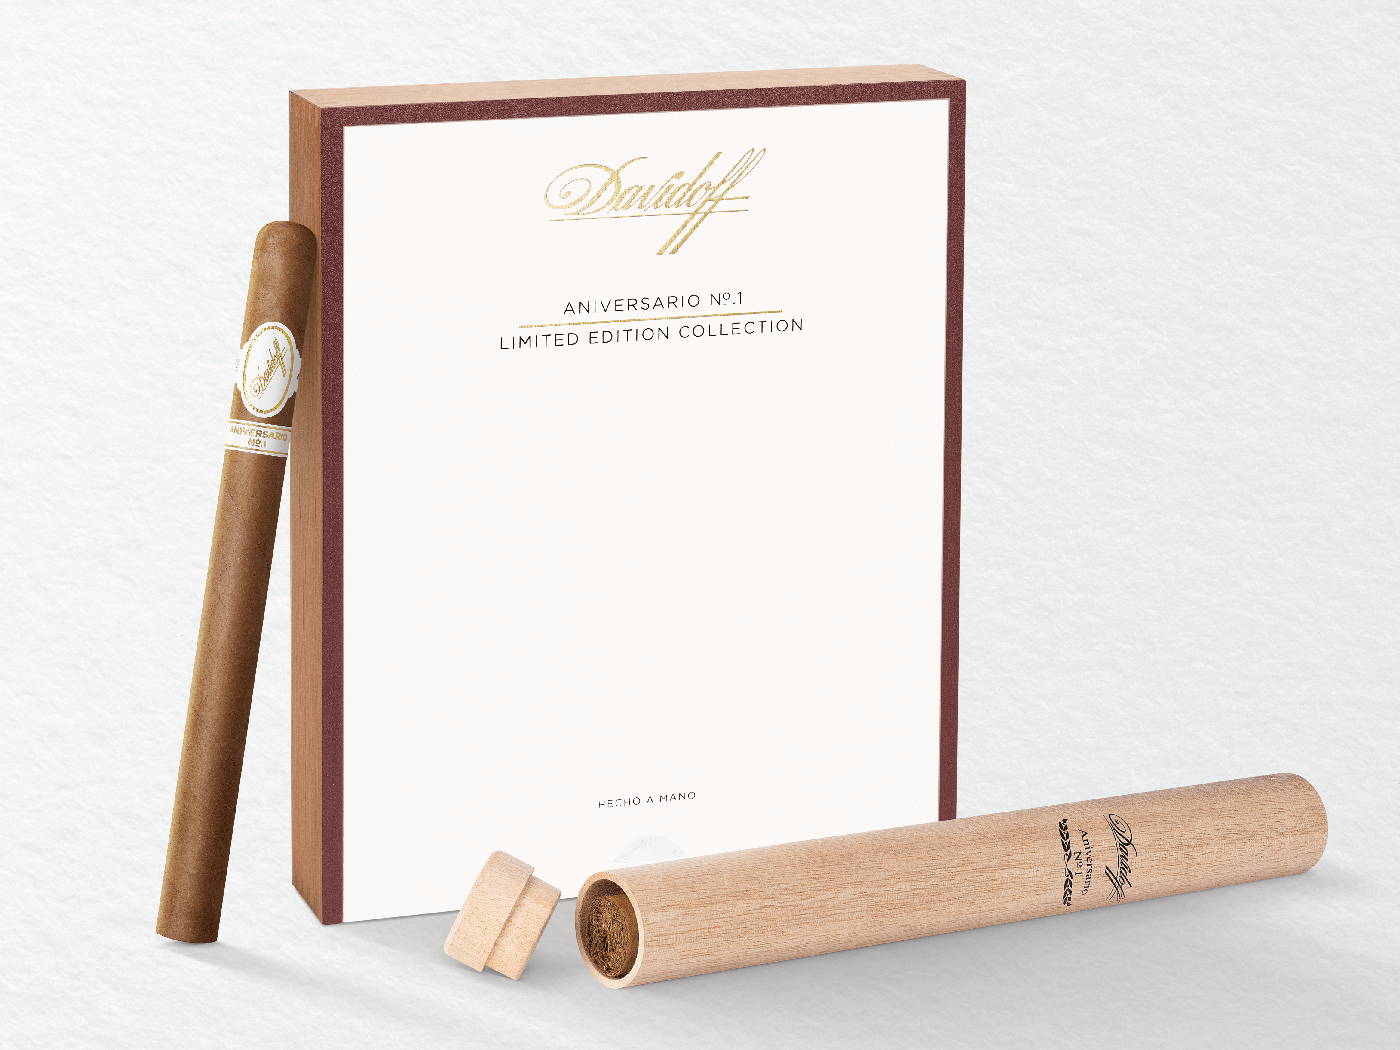 Eine Davidoff Aniversario No. 1 Limited Edition Collection-Zigarre gegen ihre Kiste lehnend, mit einem Holztubo davorliegend.